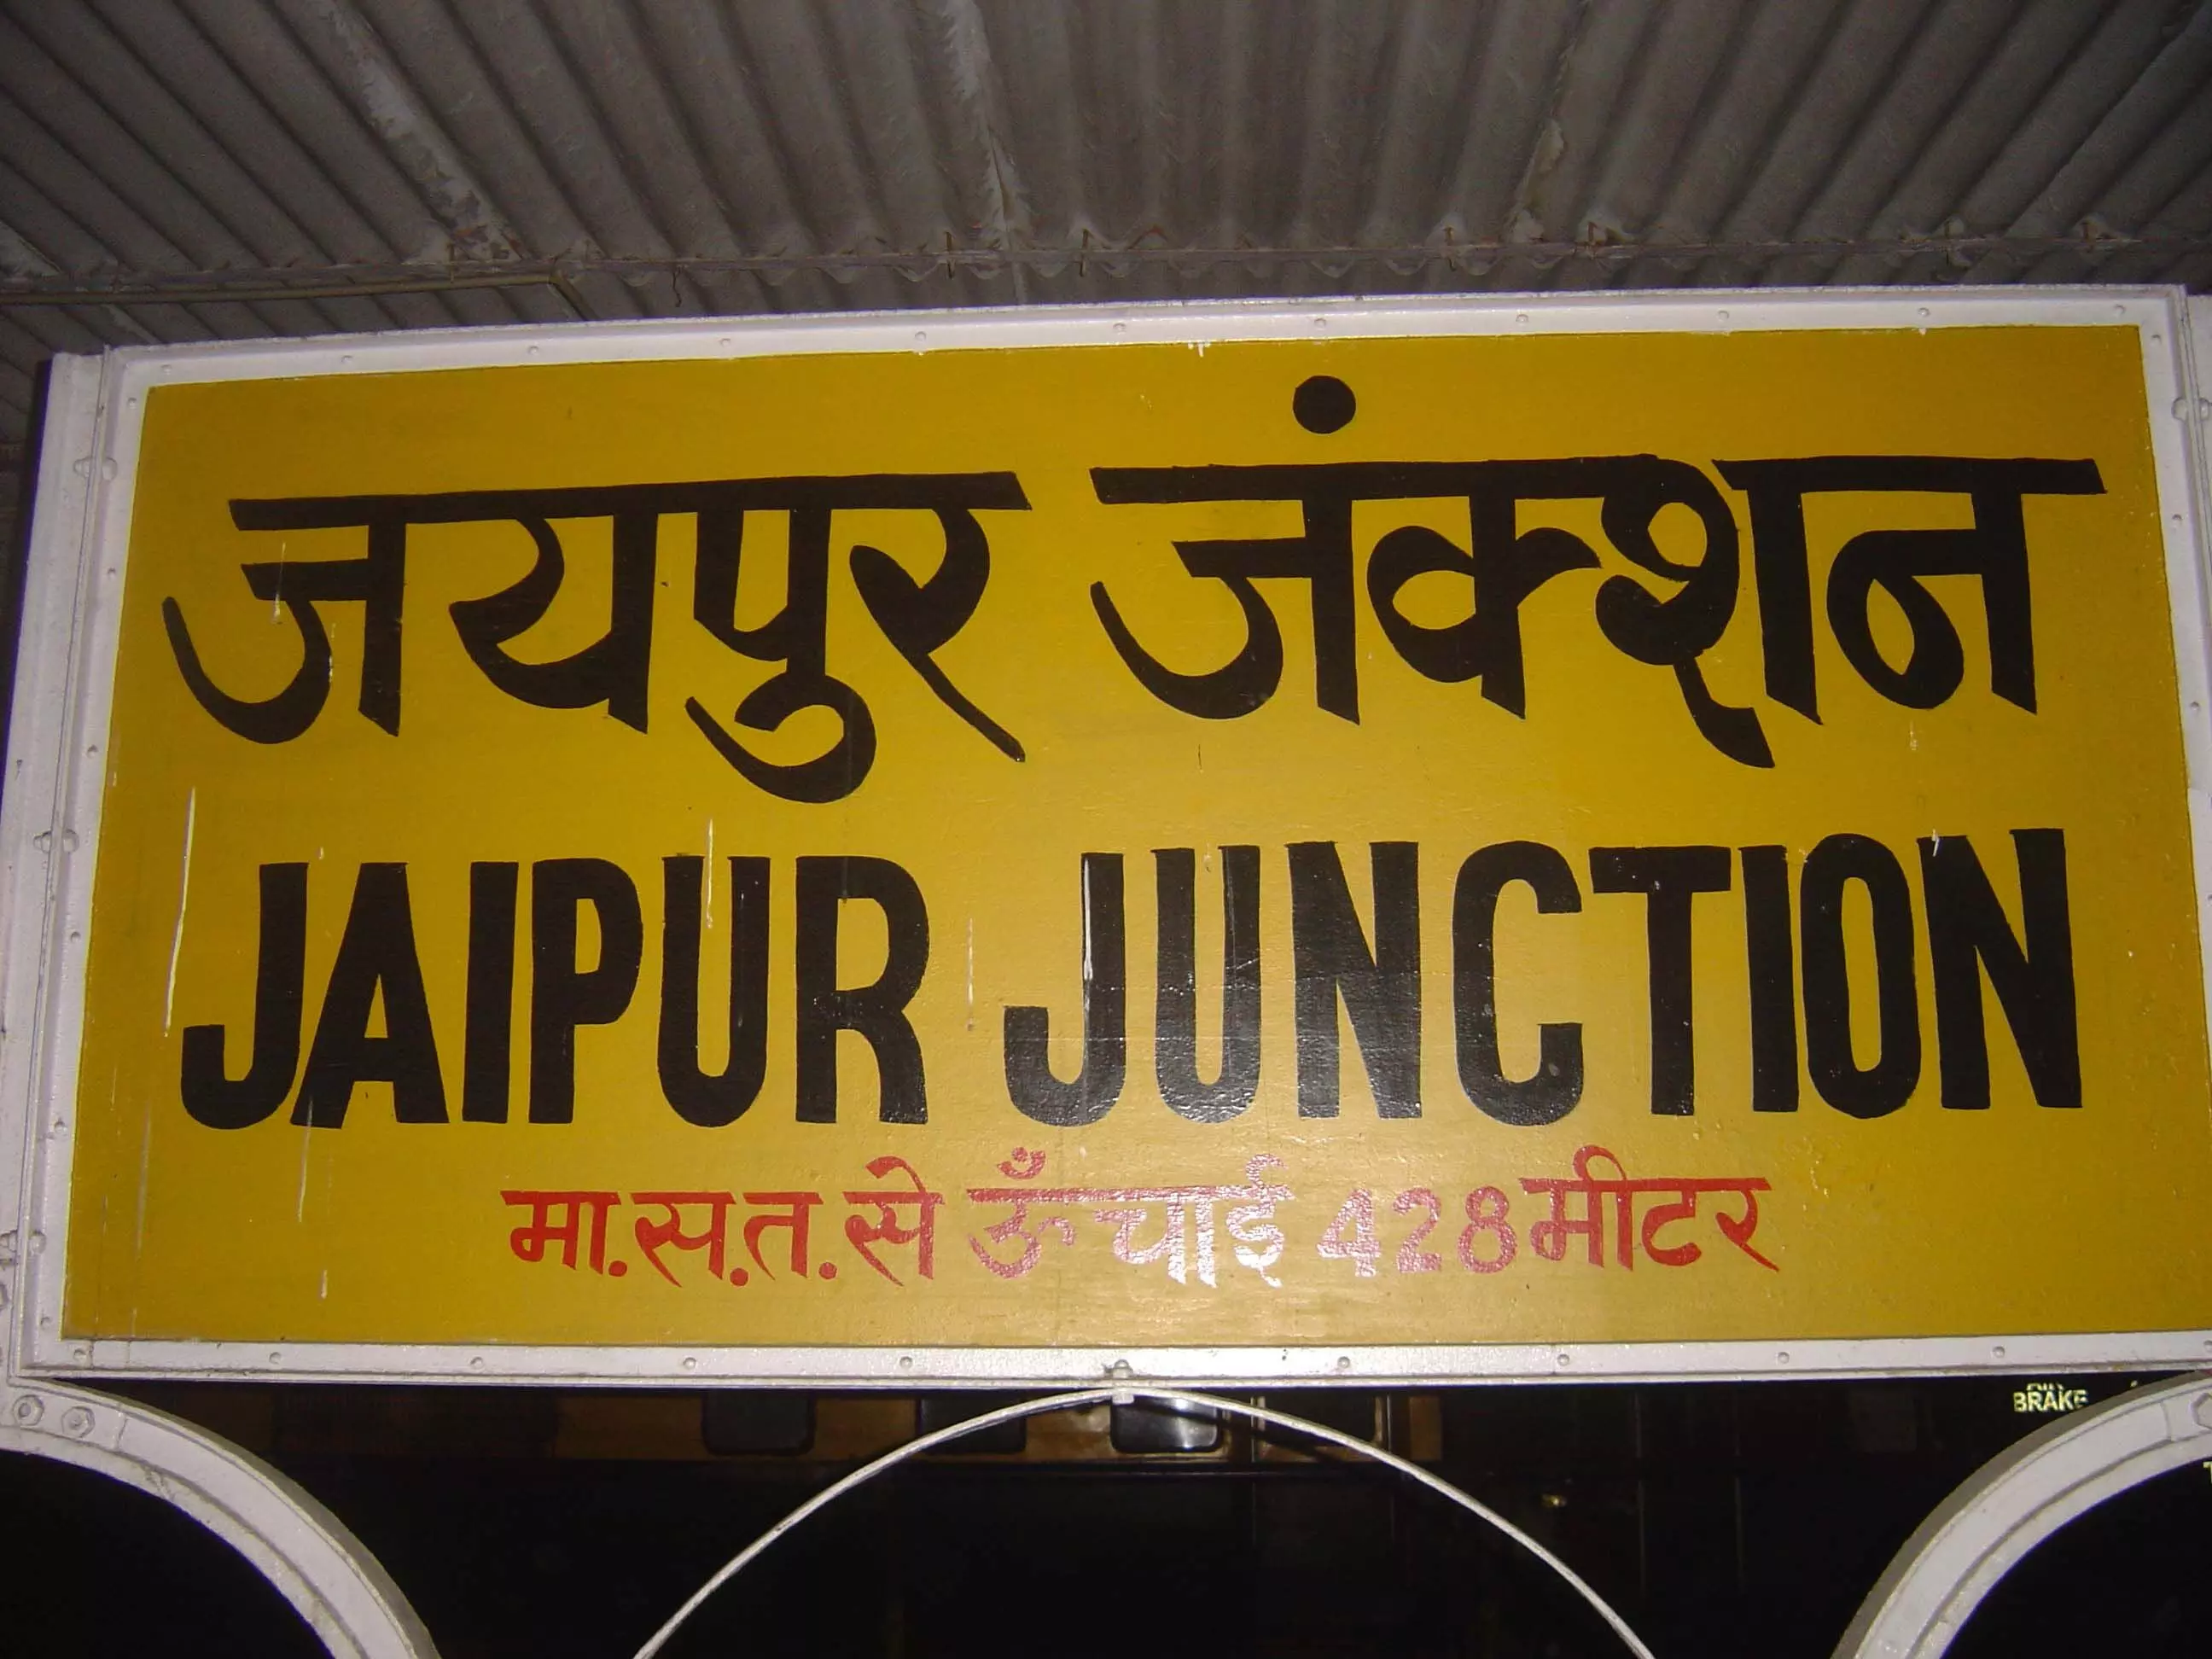 जयपुर बांद्रा टर्मिनस एक्सप्रेस 71 दिन तक जयपुर जंक्शन नहीं आएगी